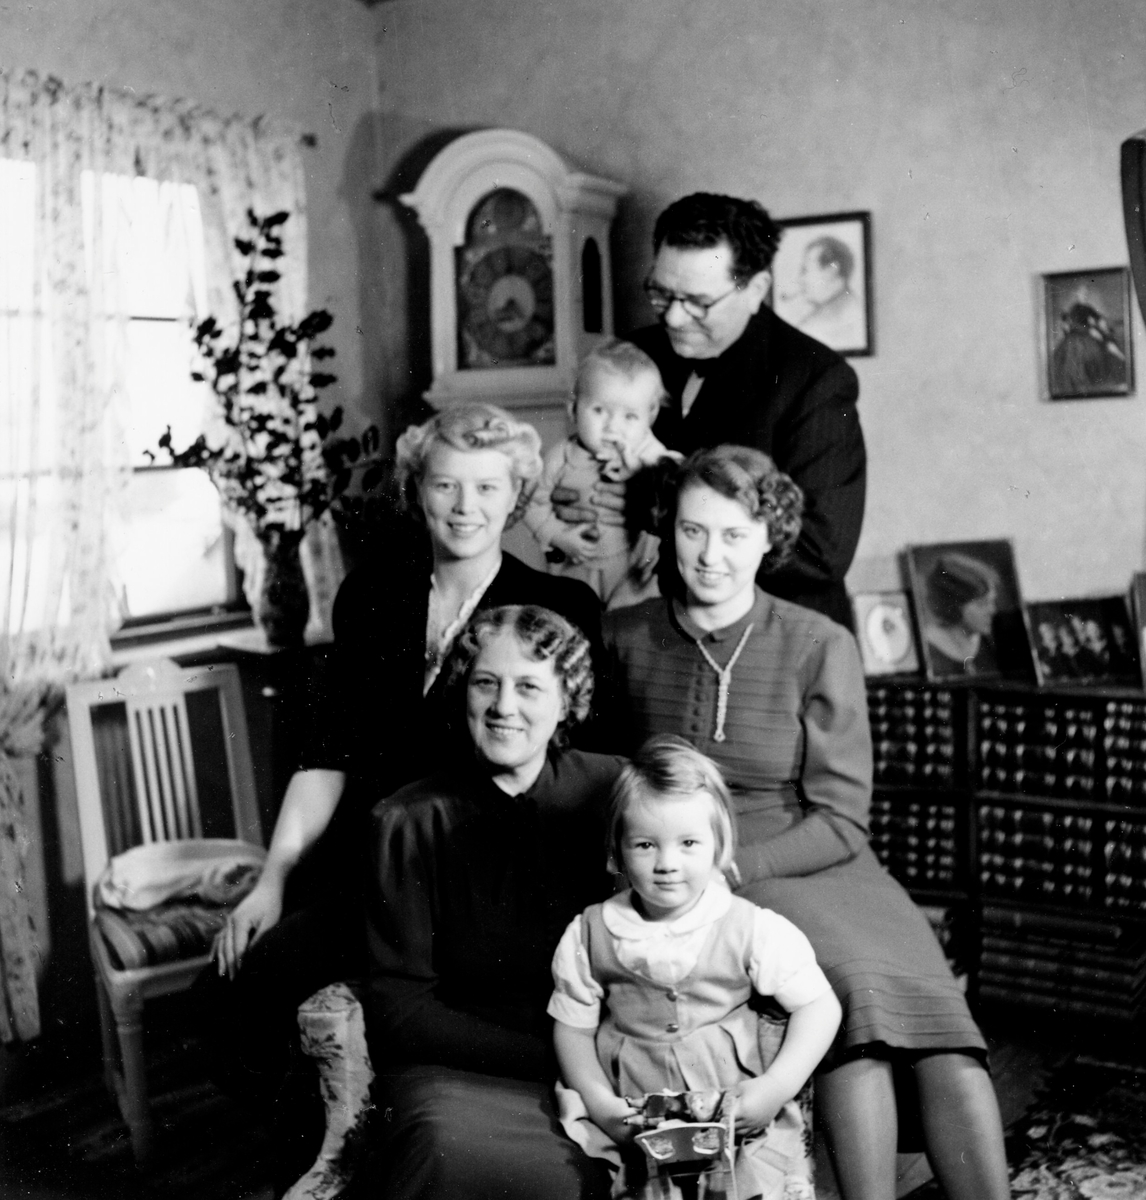 Familjen samlad i Karl Alberts villa i Tulebo cirka 1940 (villan brann i februari 1944). Främst sitter Ester Alberts (1883 - 1968) med lilla Birgitta Gullers (född 1937) i knäet. Bakom dem sitter Ingvor Alberts (1914 - 2009, gift Gullers) och Gunnel Alberts (1912 - 2007, gift Dahlbeck). Längst bak står Karl Alberts Johansson (1881 - 1956) hållandes lille Petter Gullers (född 1938).